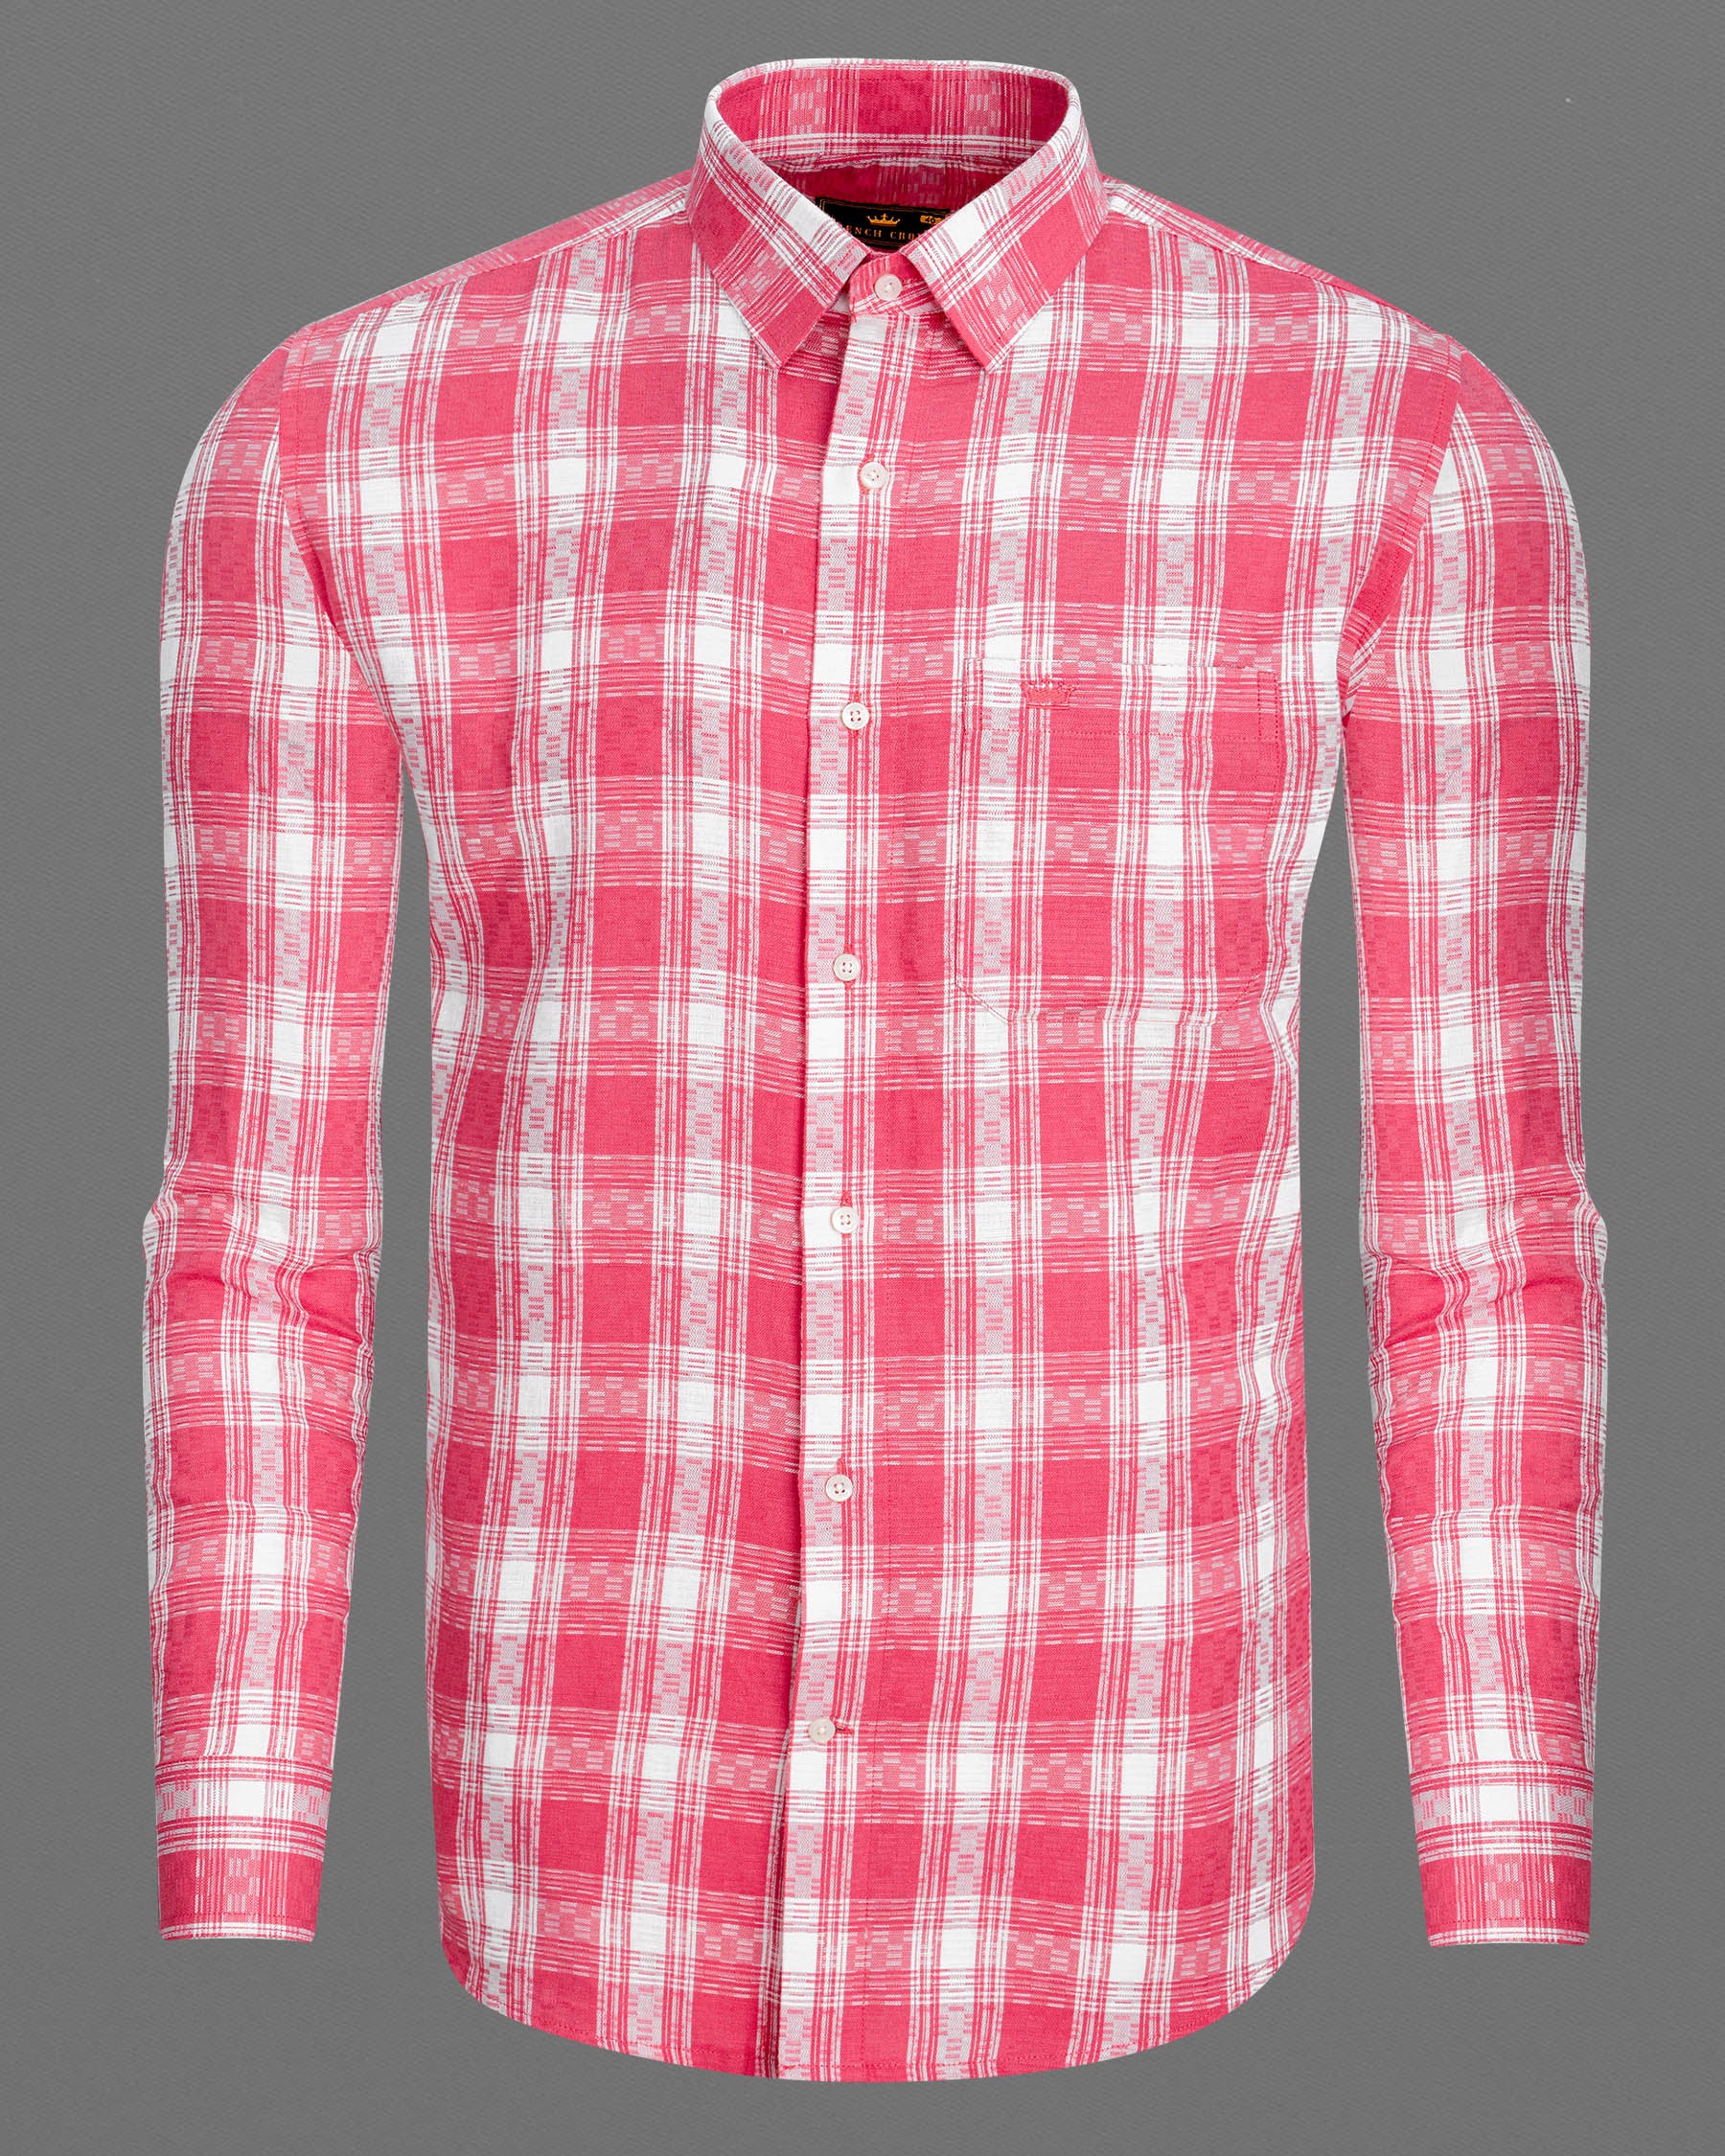 Mandy Pink and Bright White Checkered Twill Premium Cotton Shirt 6930-38,6930-38,6930-39,6930-39,6930-40,6930-40,6930-42,6930-42,6930-44,6930-44,6930-46,6930-46,6930-48,6930-48,6930-50,6930-50,6930-52,6930-52